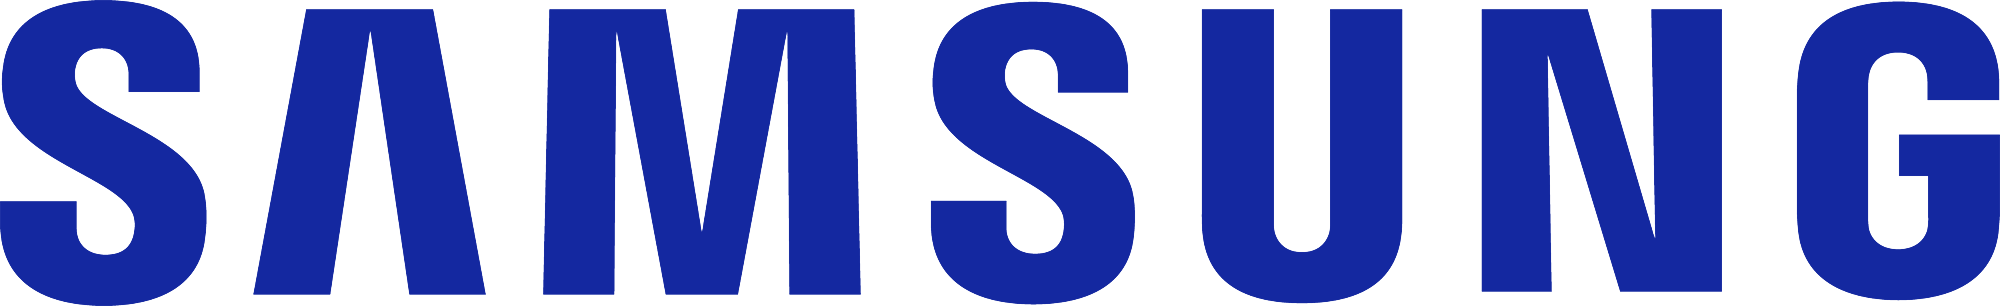 Samsung_logo_blue-Kopie